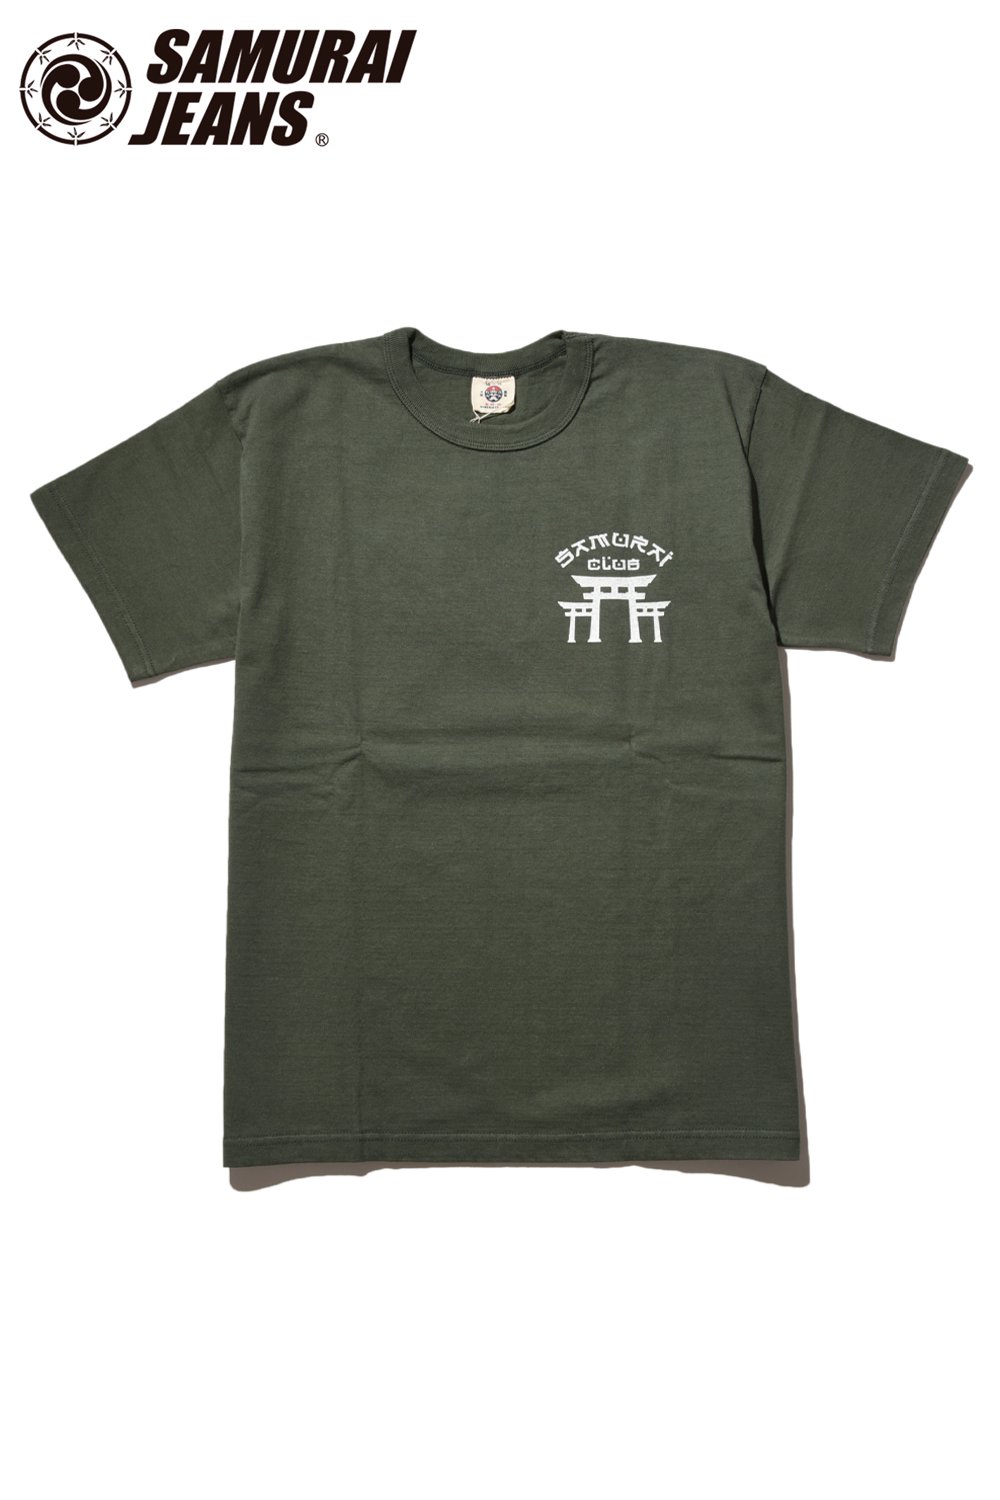 SAMURAI JEANS(サムライジーンズ) Tシャツ SCT19-101 通販正規 